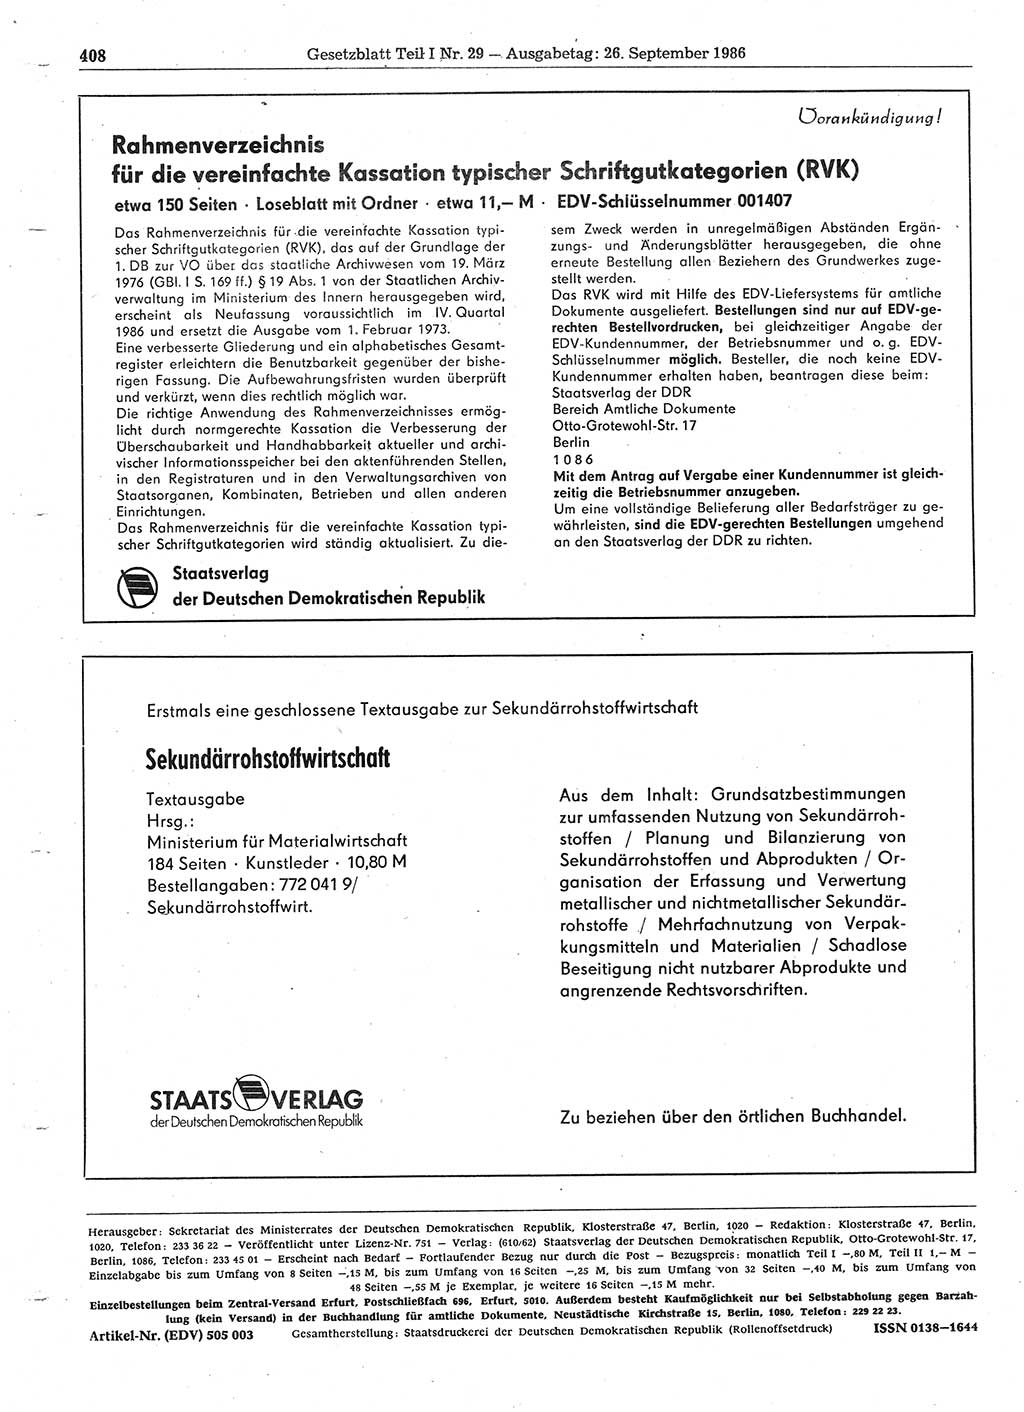 Gesetzblatt (GBl.) der Deutschen Demokratischen Republik (DDR) Teil Ⅰ 1986, Seite 408 (GBl. DDR Ⅰ 1986, S. 408)